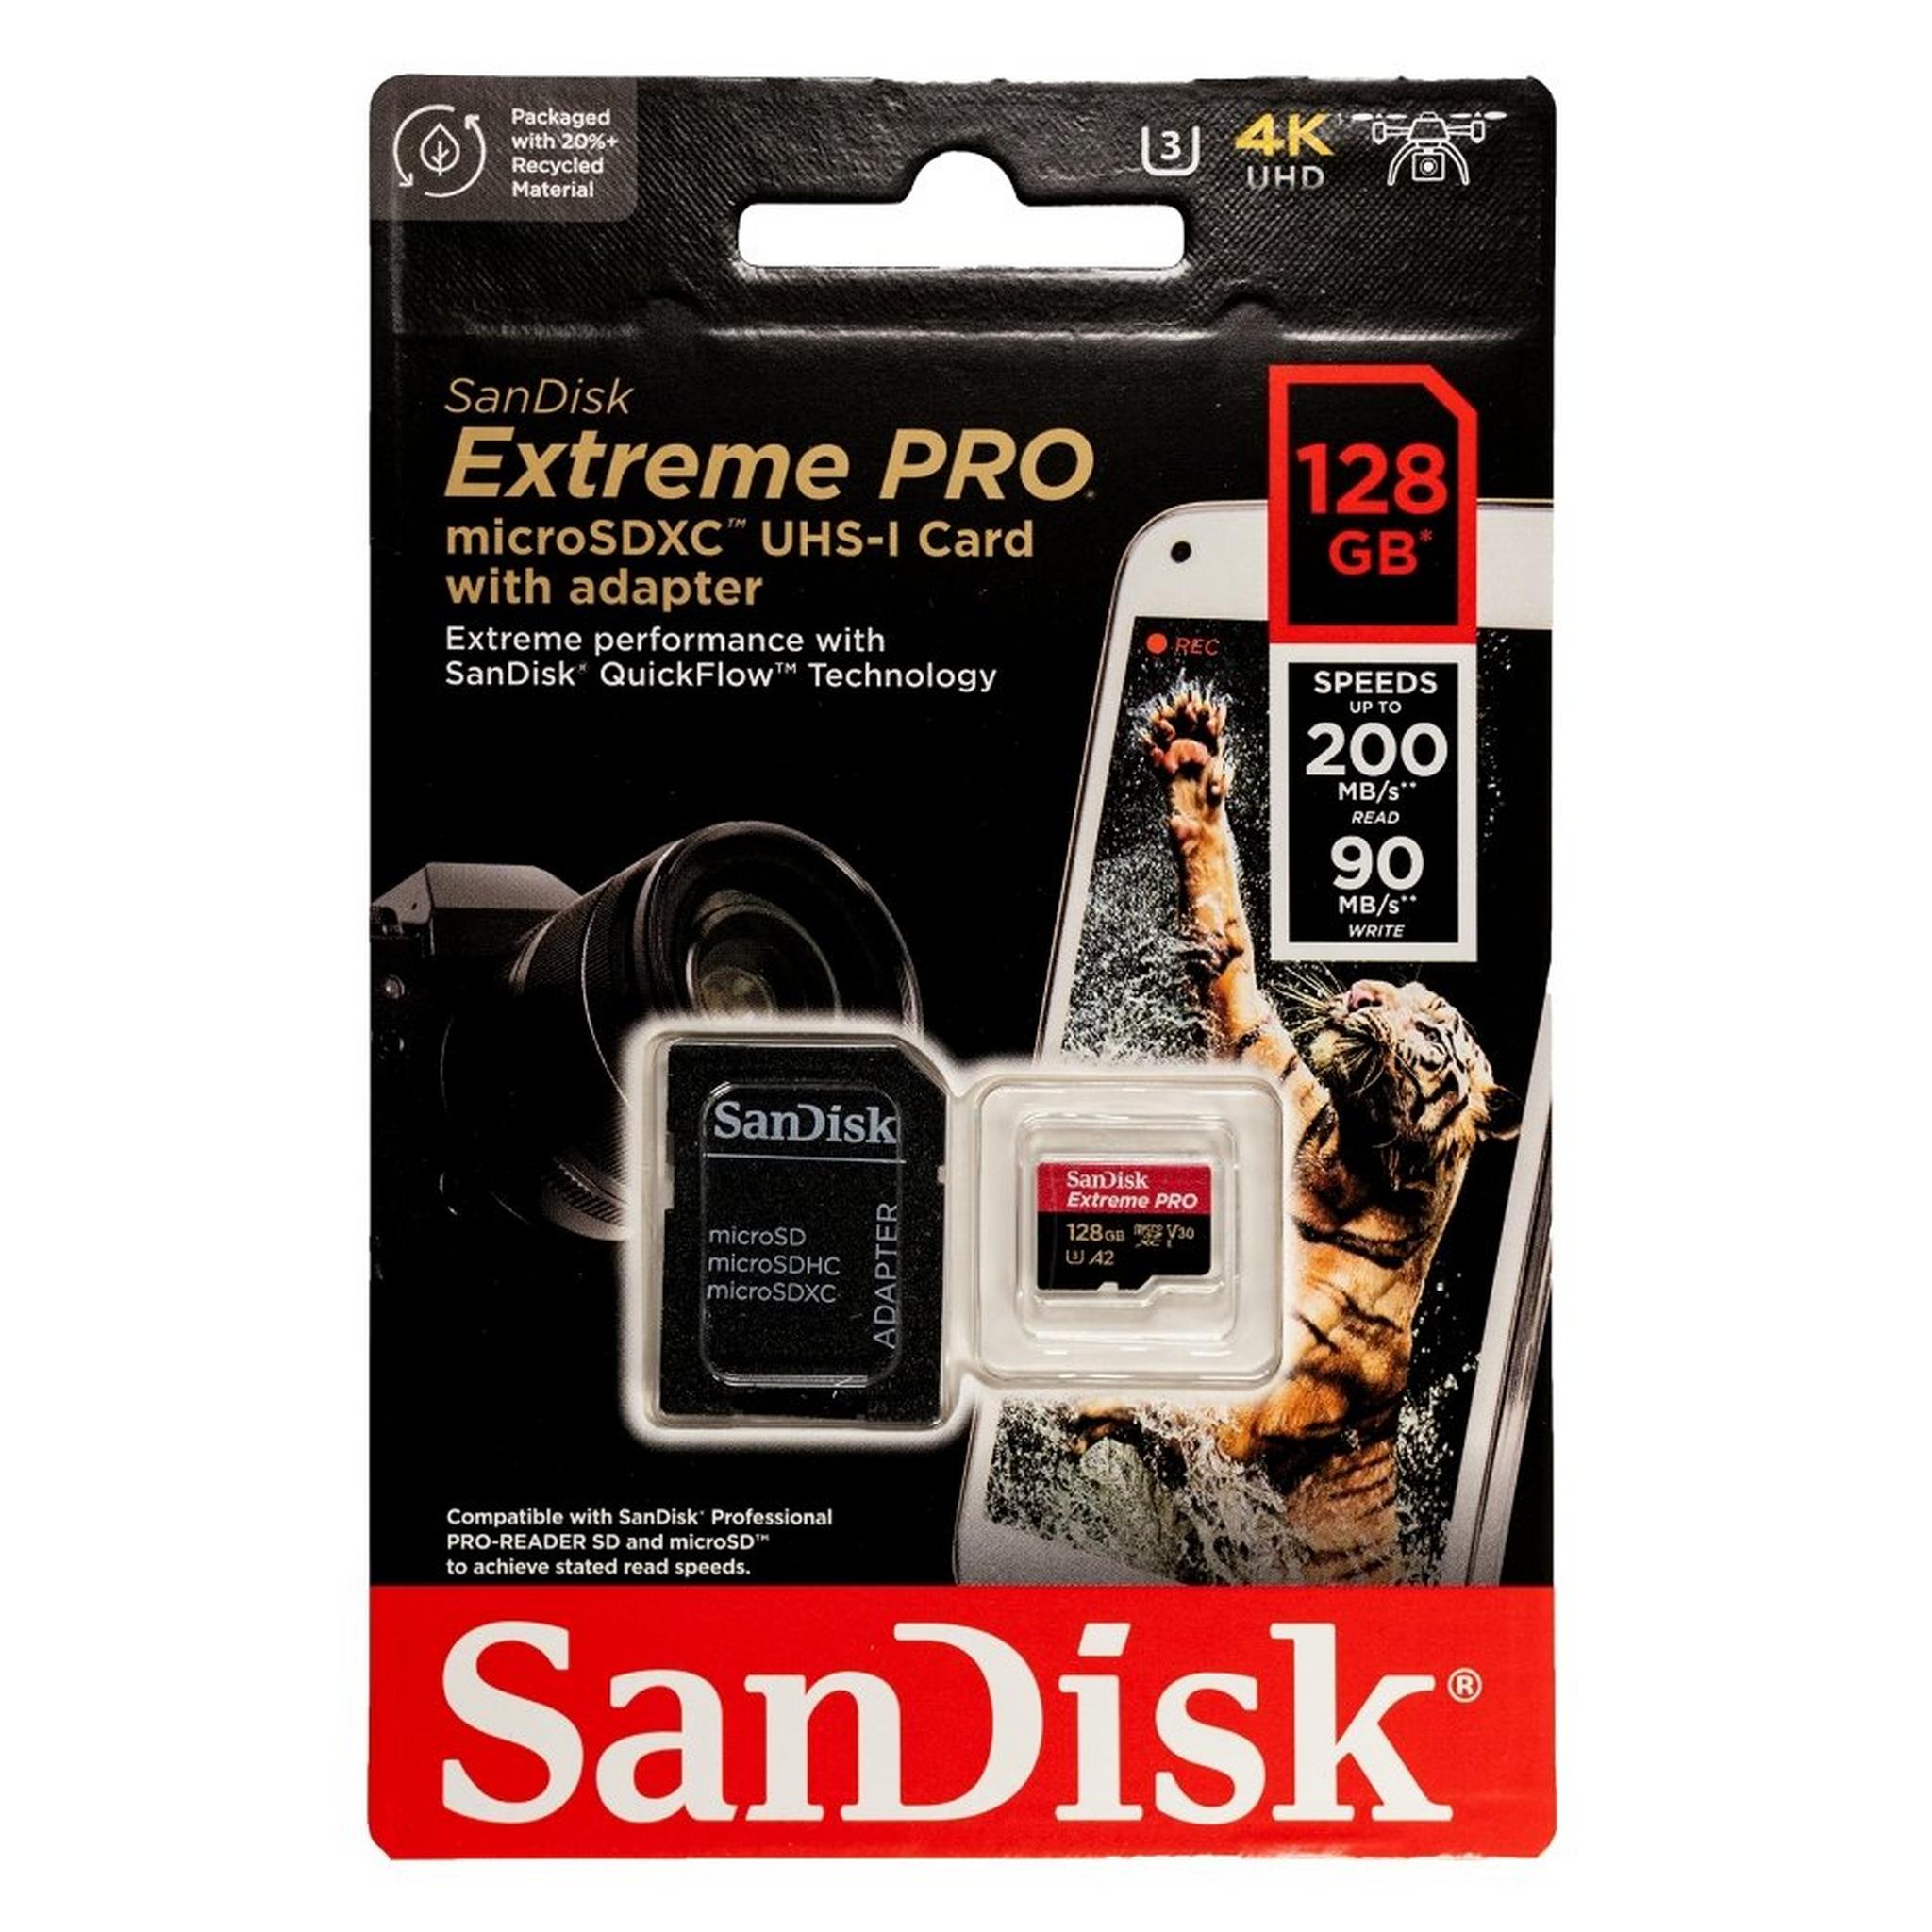 بطاقة الذاكرة سانديسك إكستريم برو® ميكرو إس دي™ يو إتش إس-١ سعة ١٢٨ جيجابايت مع محول